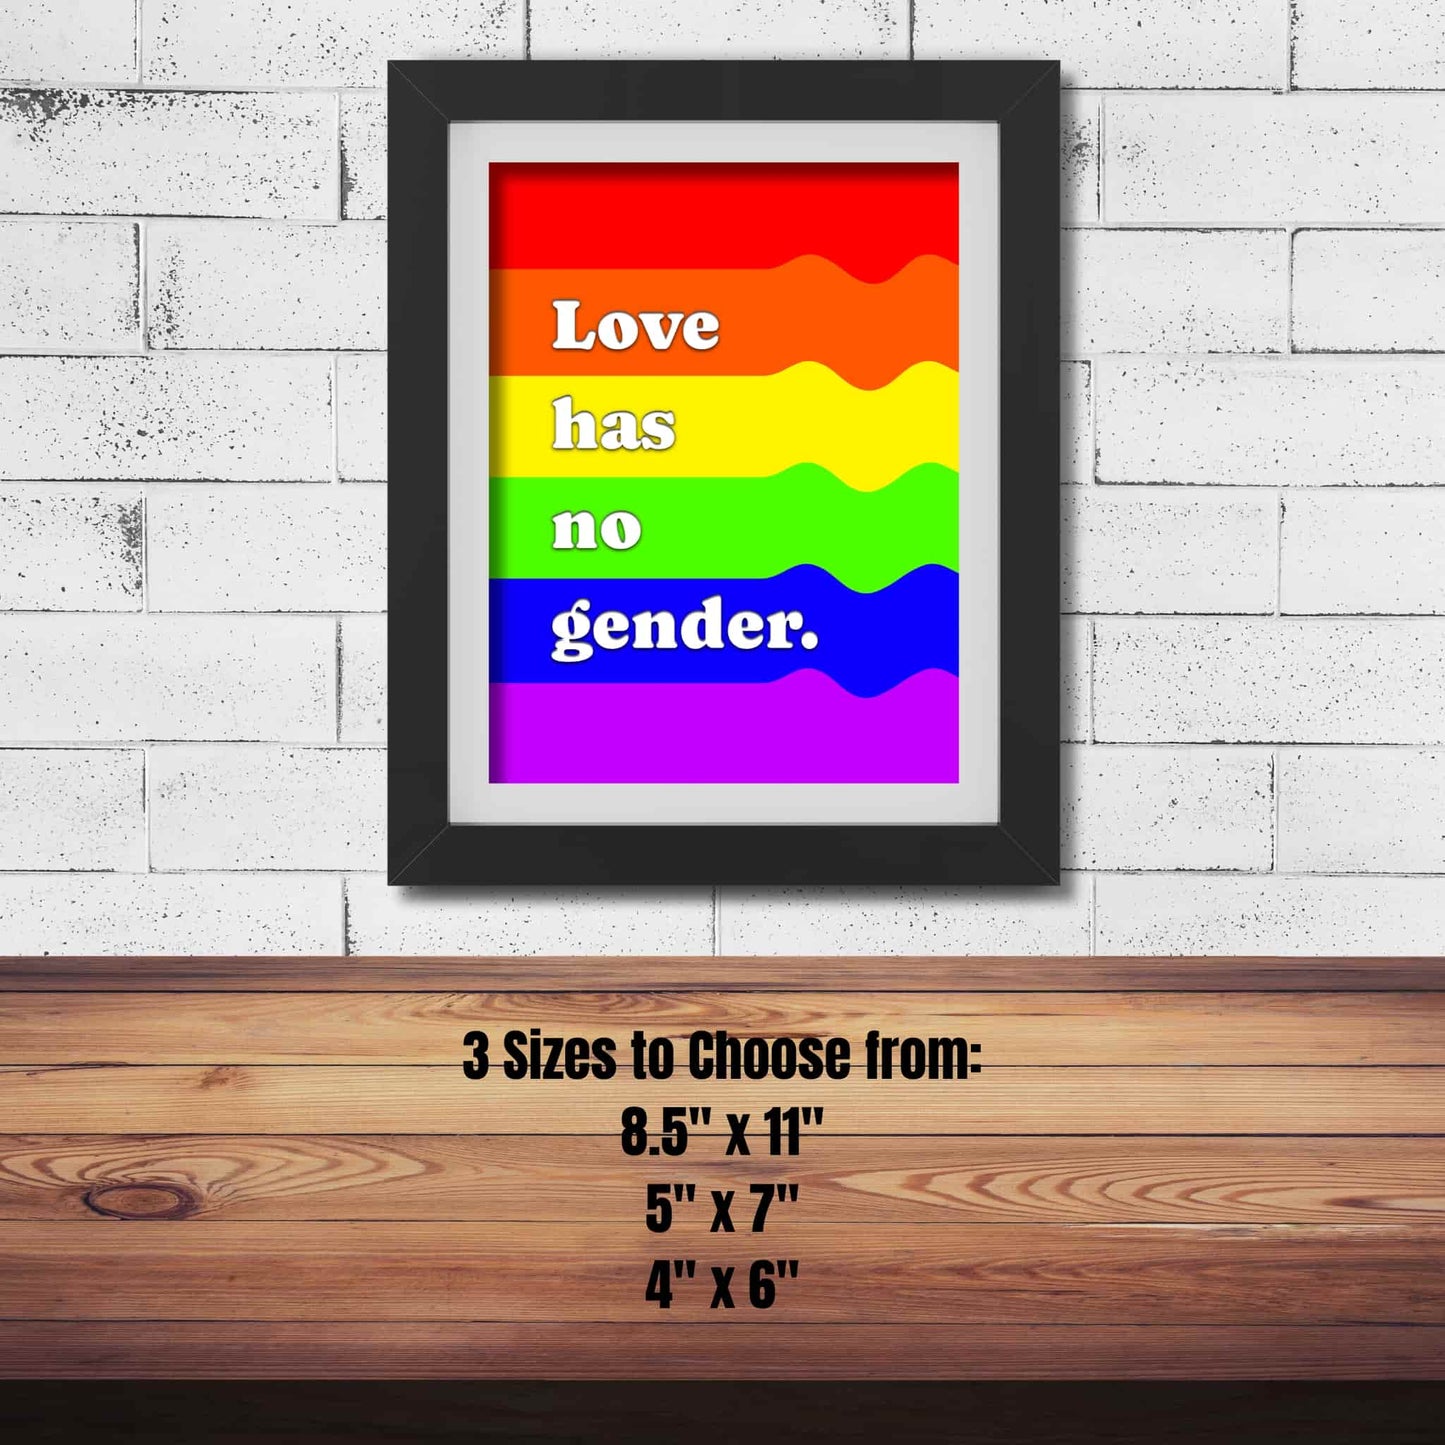 Love has no gender